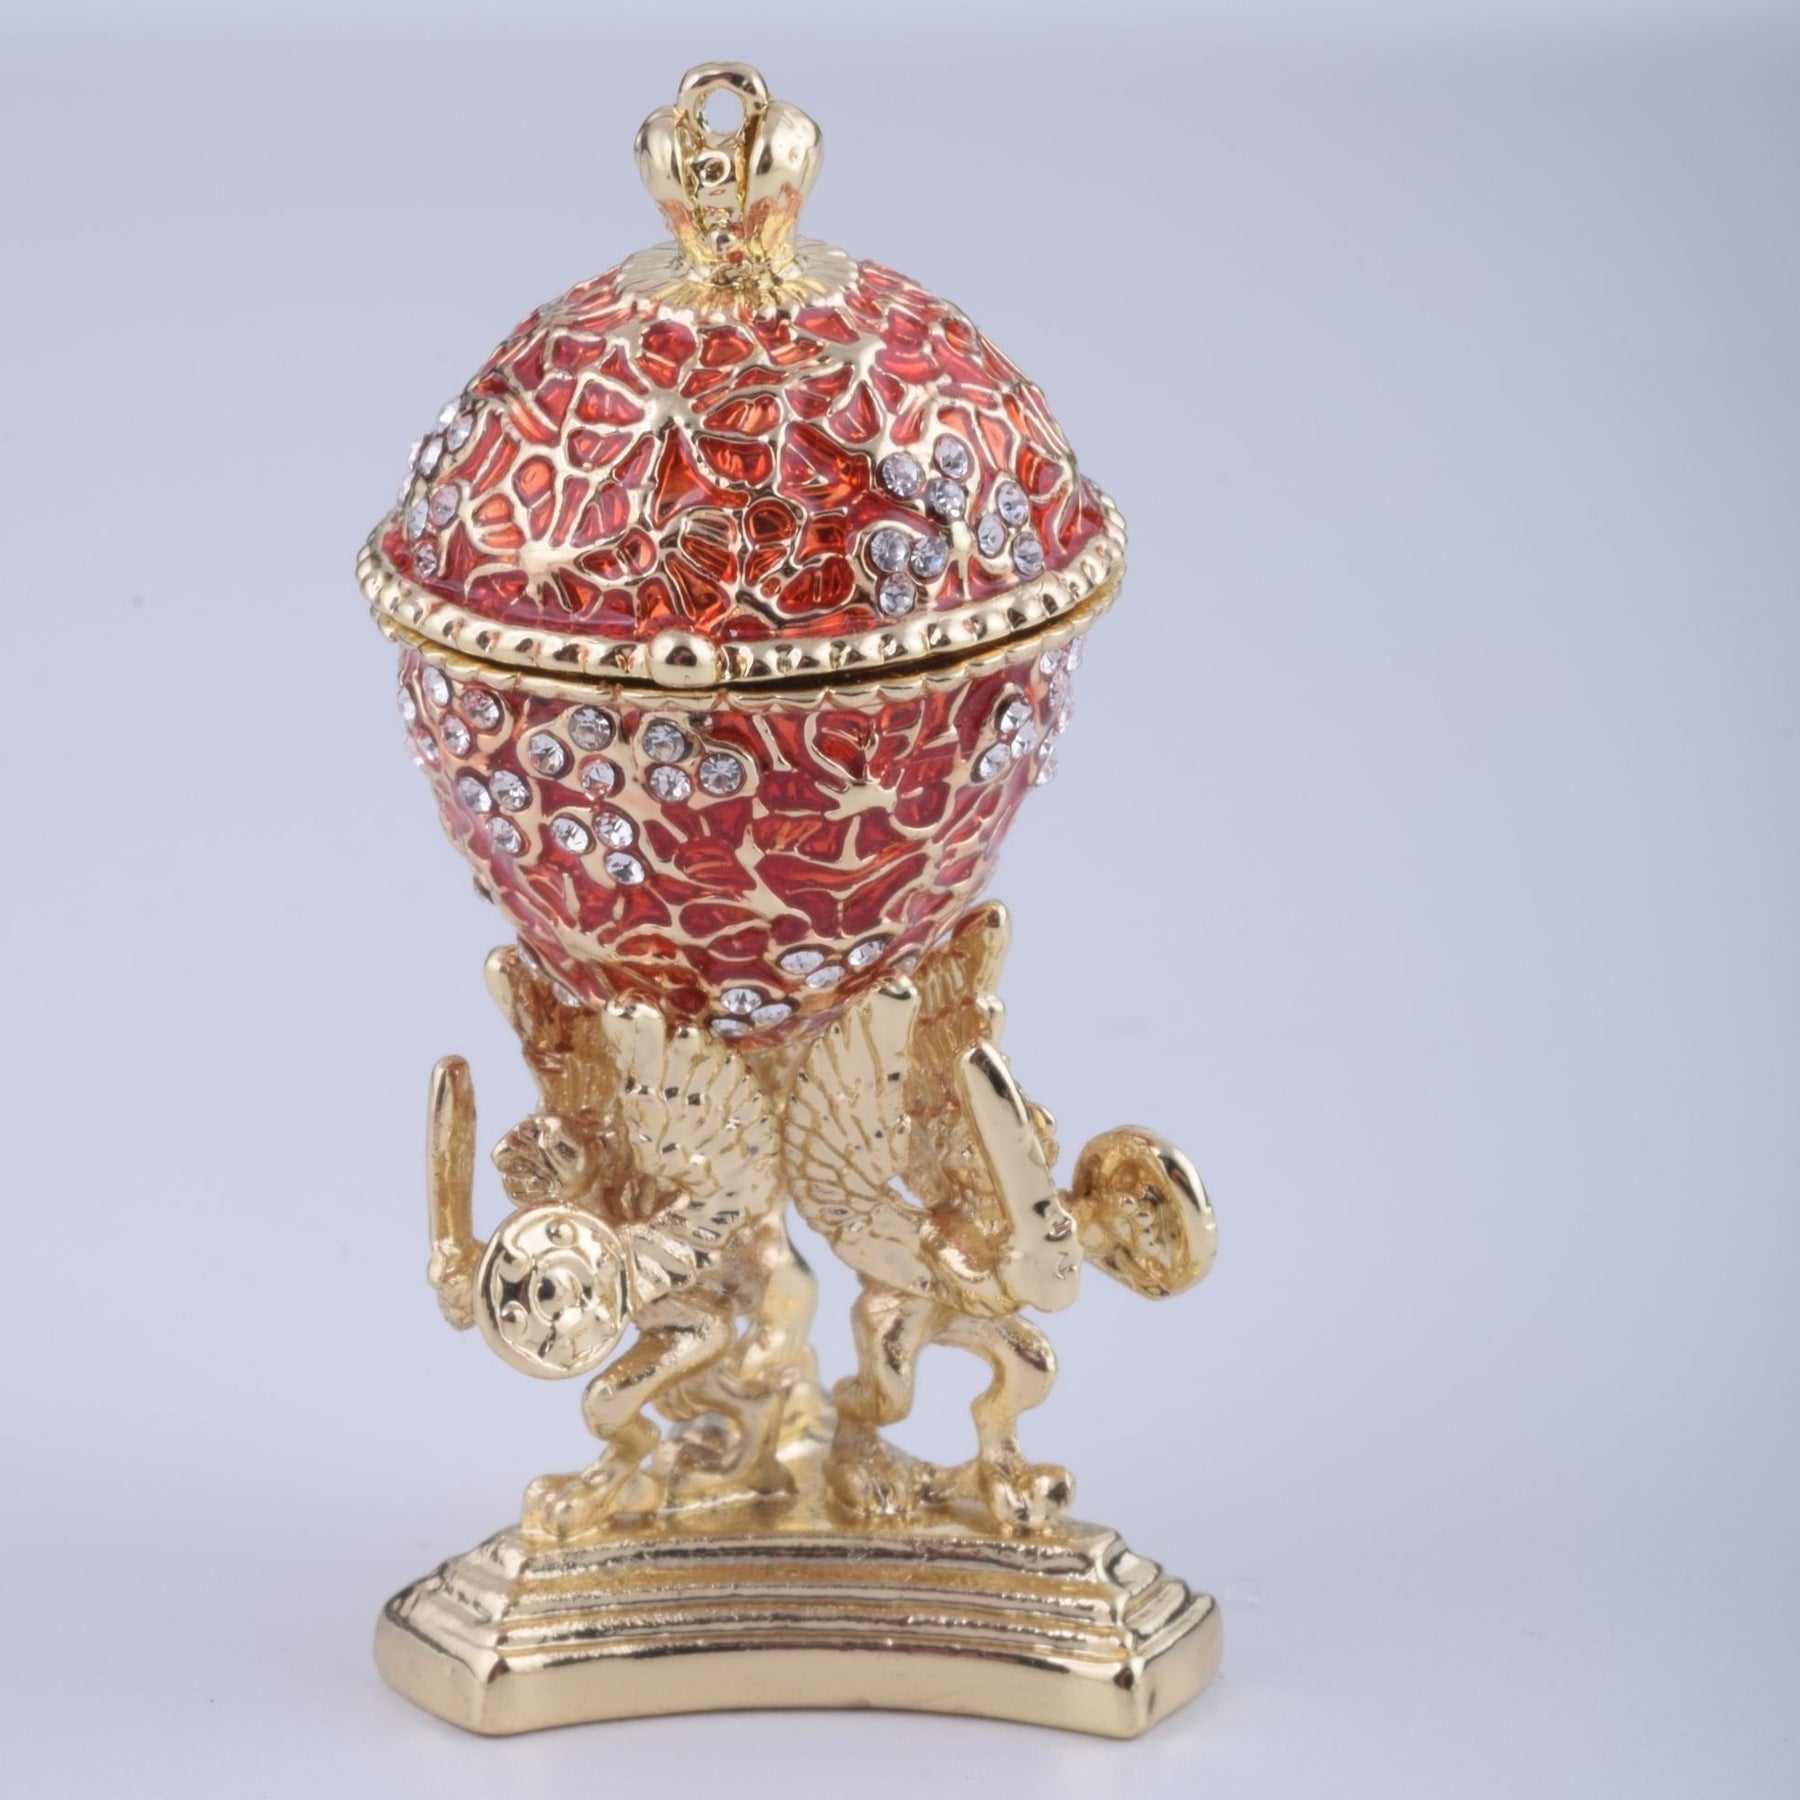 Keren Kopal Red Faberge Egg with a Golden Frog Inside  51.25